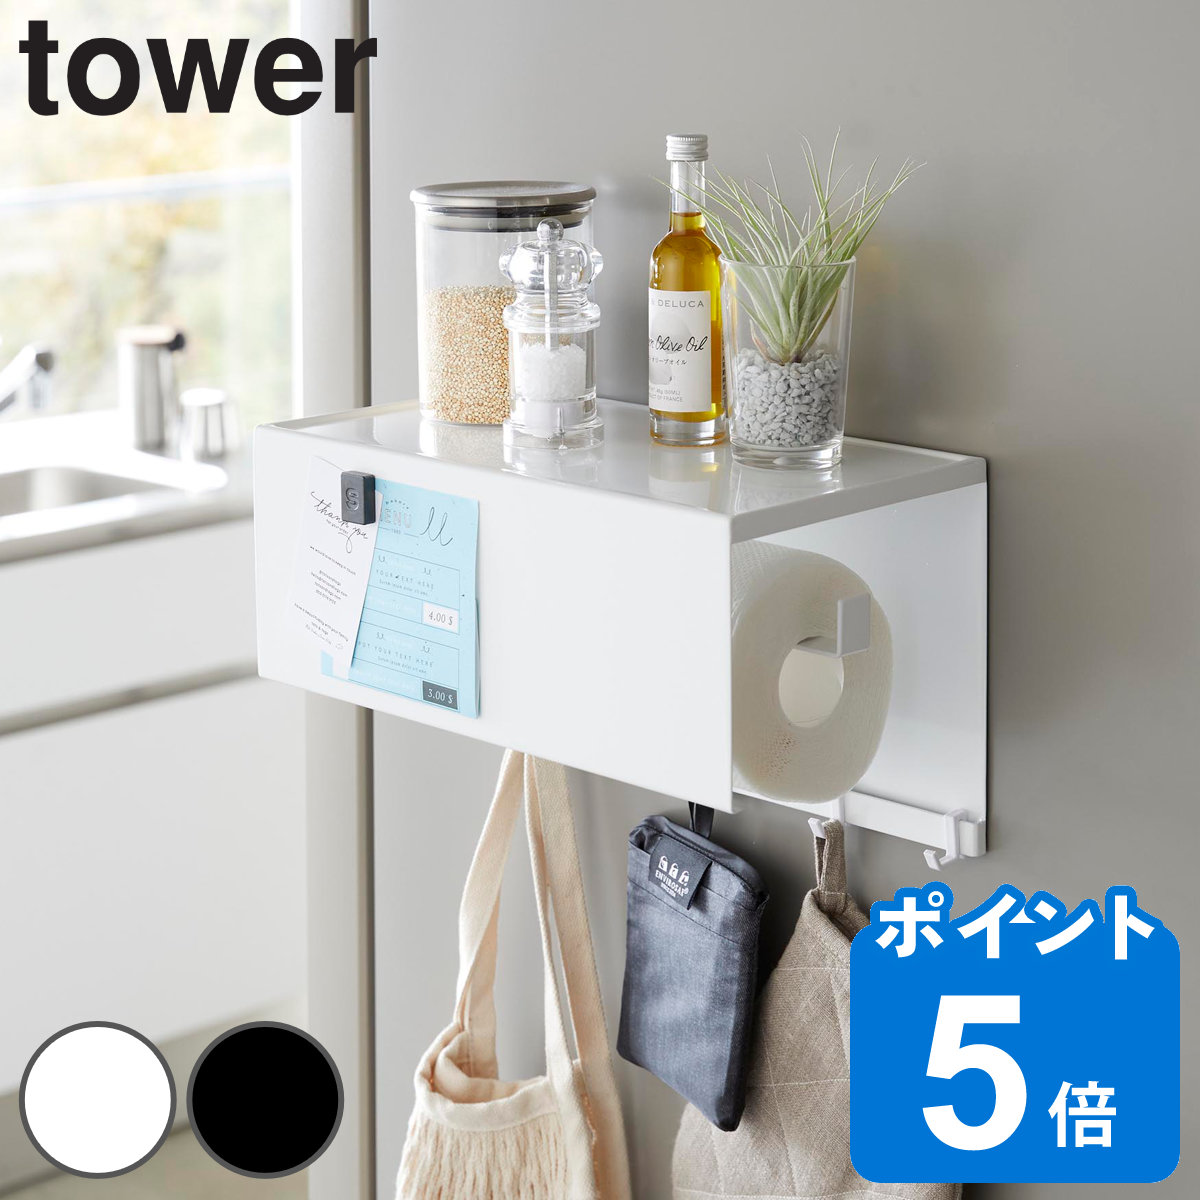 山崎実業 tower マグネットトレー付きキッチンペーパーホルダー タワー